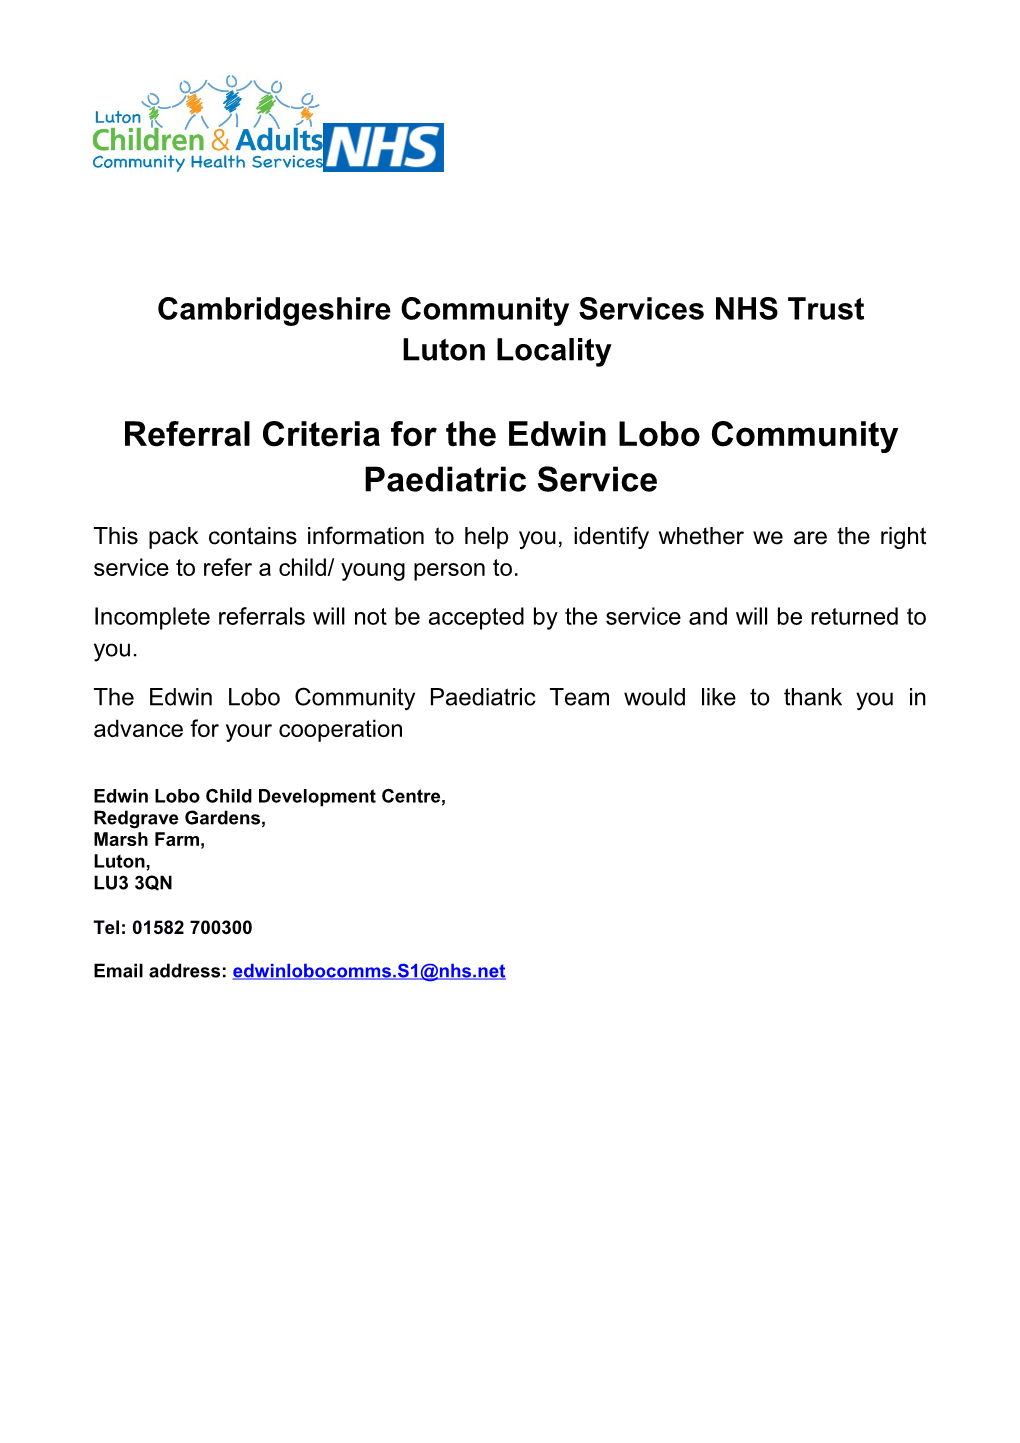 Referral Criteria for the Edwin Lobo Community Paediatric Service